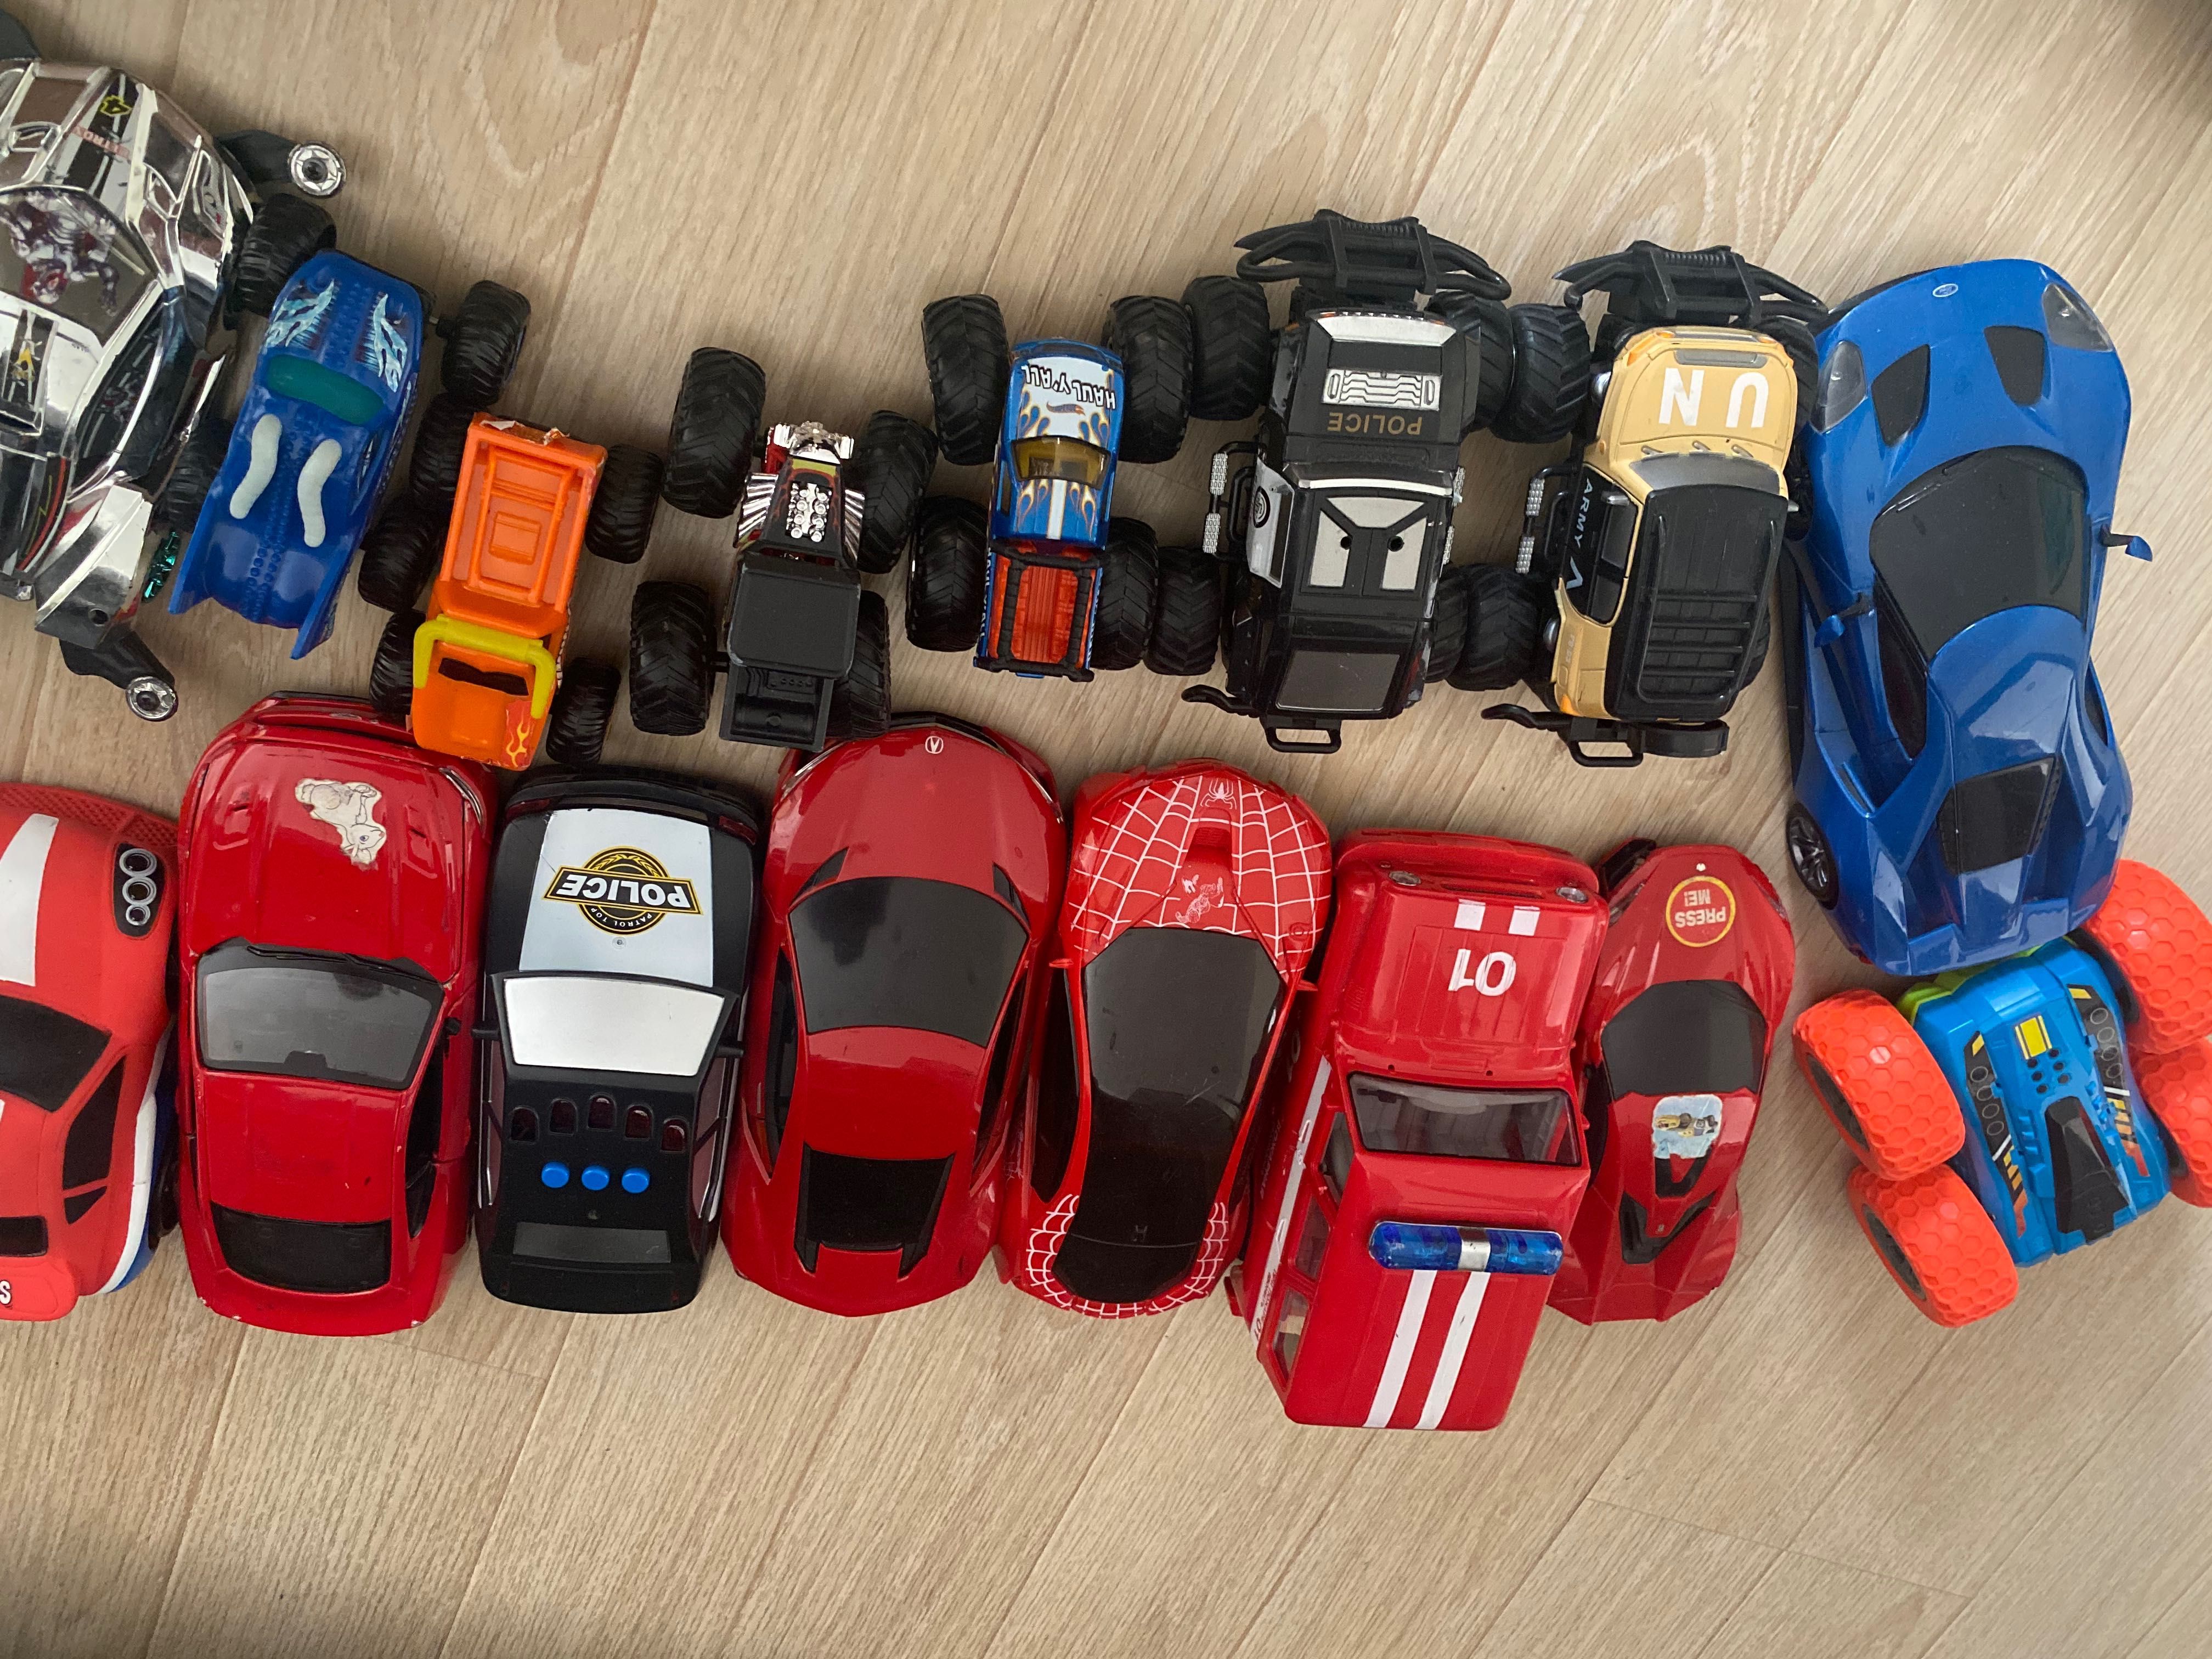 Дитячі іграшки - моделі автомобілів